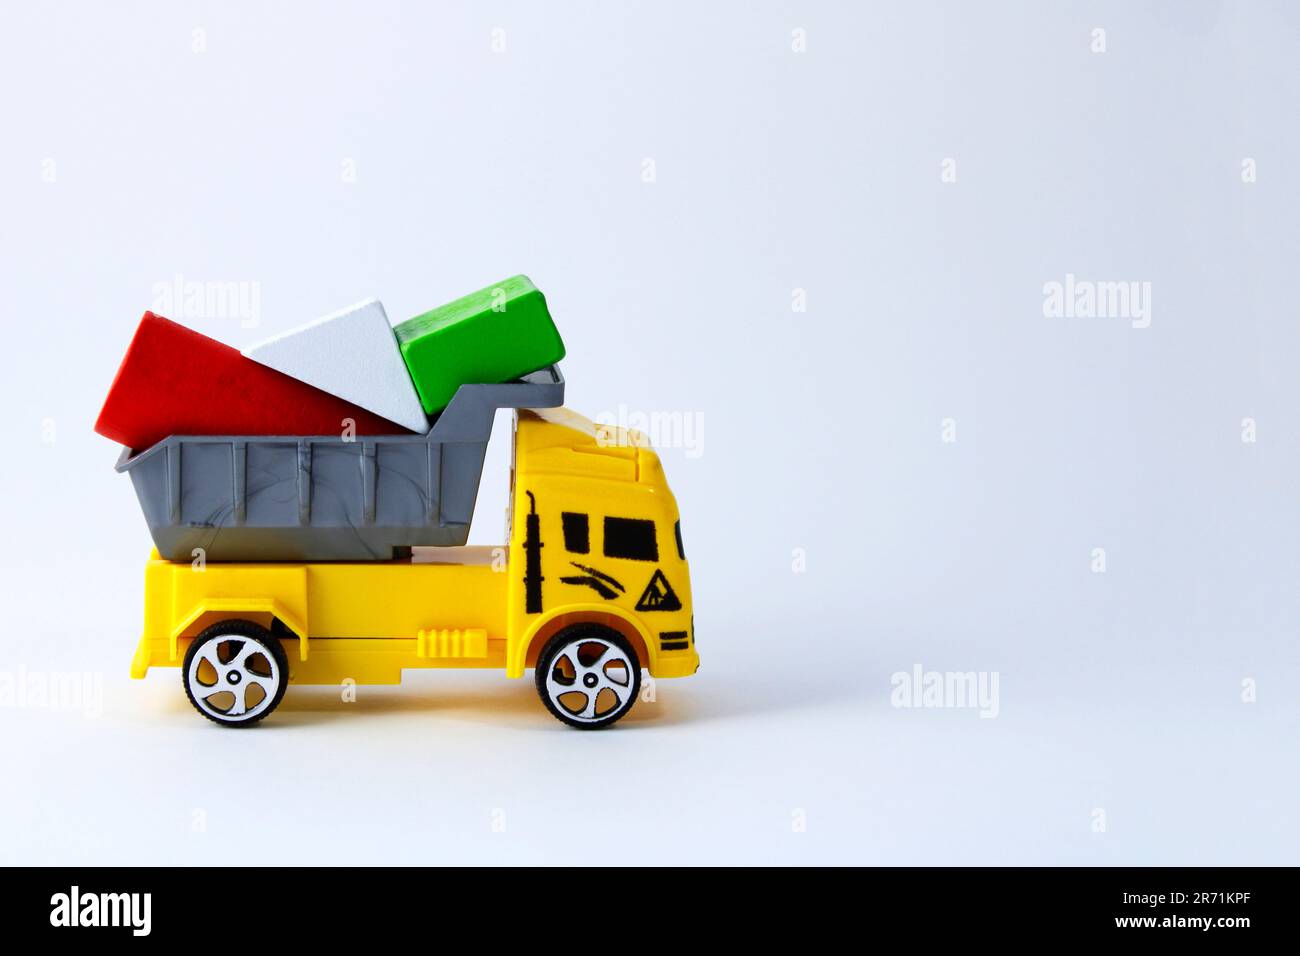 Camion-jouet transportant des figurines géométriques Banque D'Images